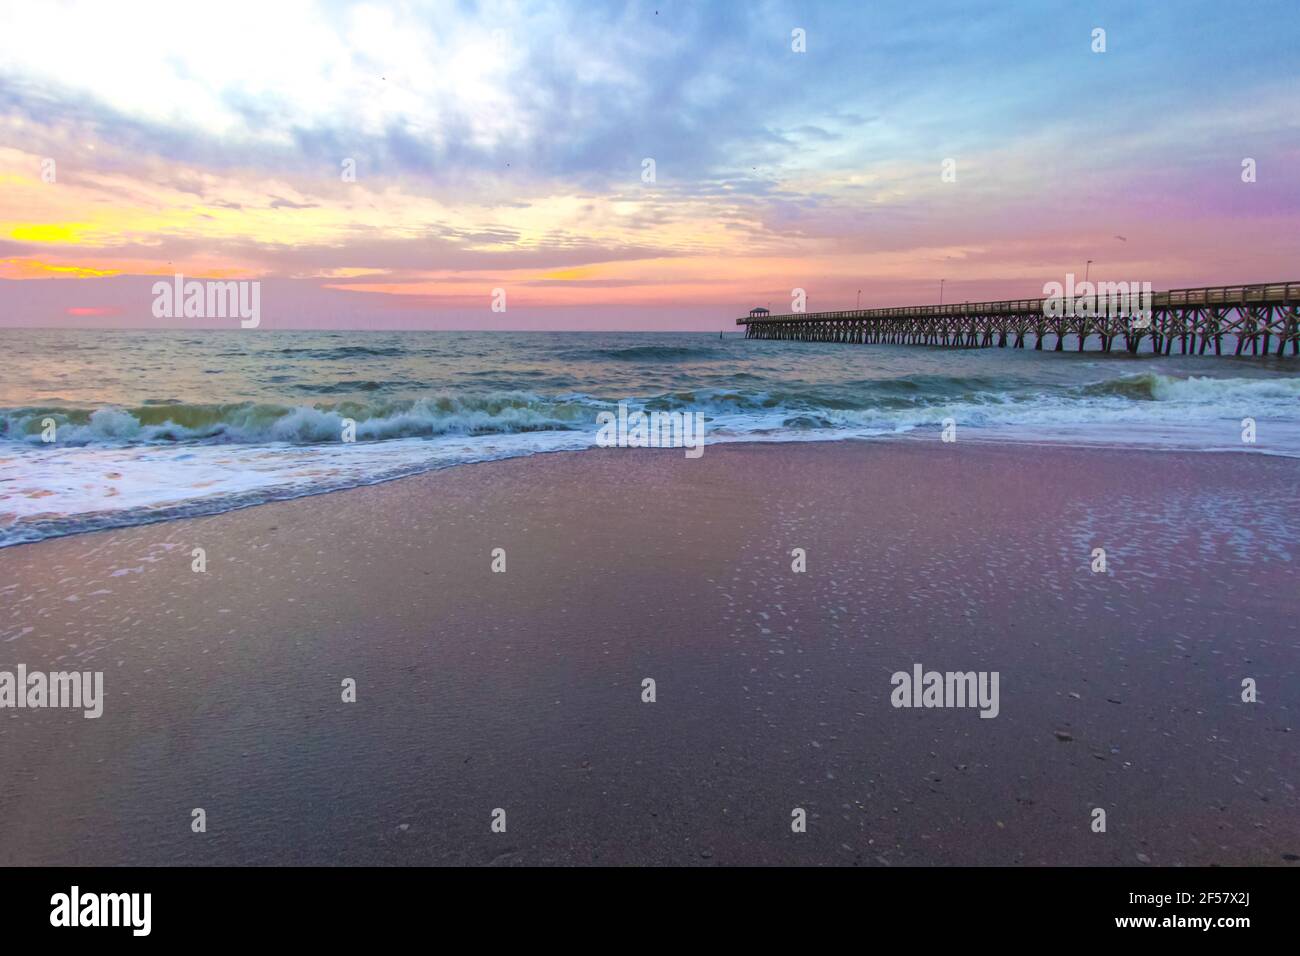 Myrtle Beach Sunrise Paysage. Lever du soleil sur une large plage de sable avec jetée de pêche sur la côte de l'océan Atlantique à Myrtle Beach, Caroline du Sud Etats-Unis Banque D'Images